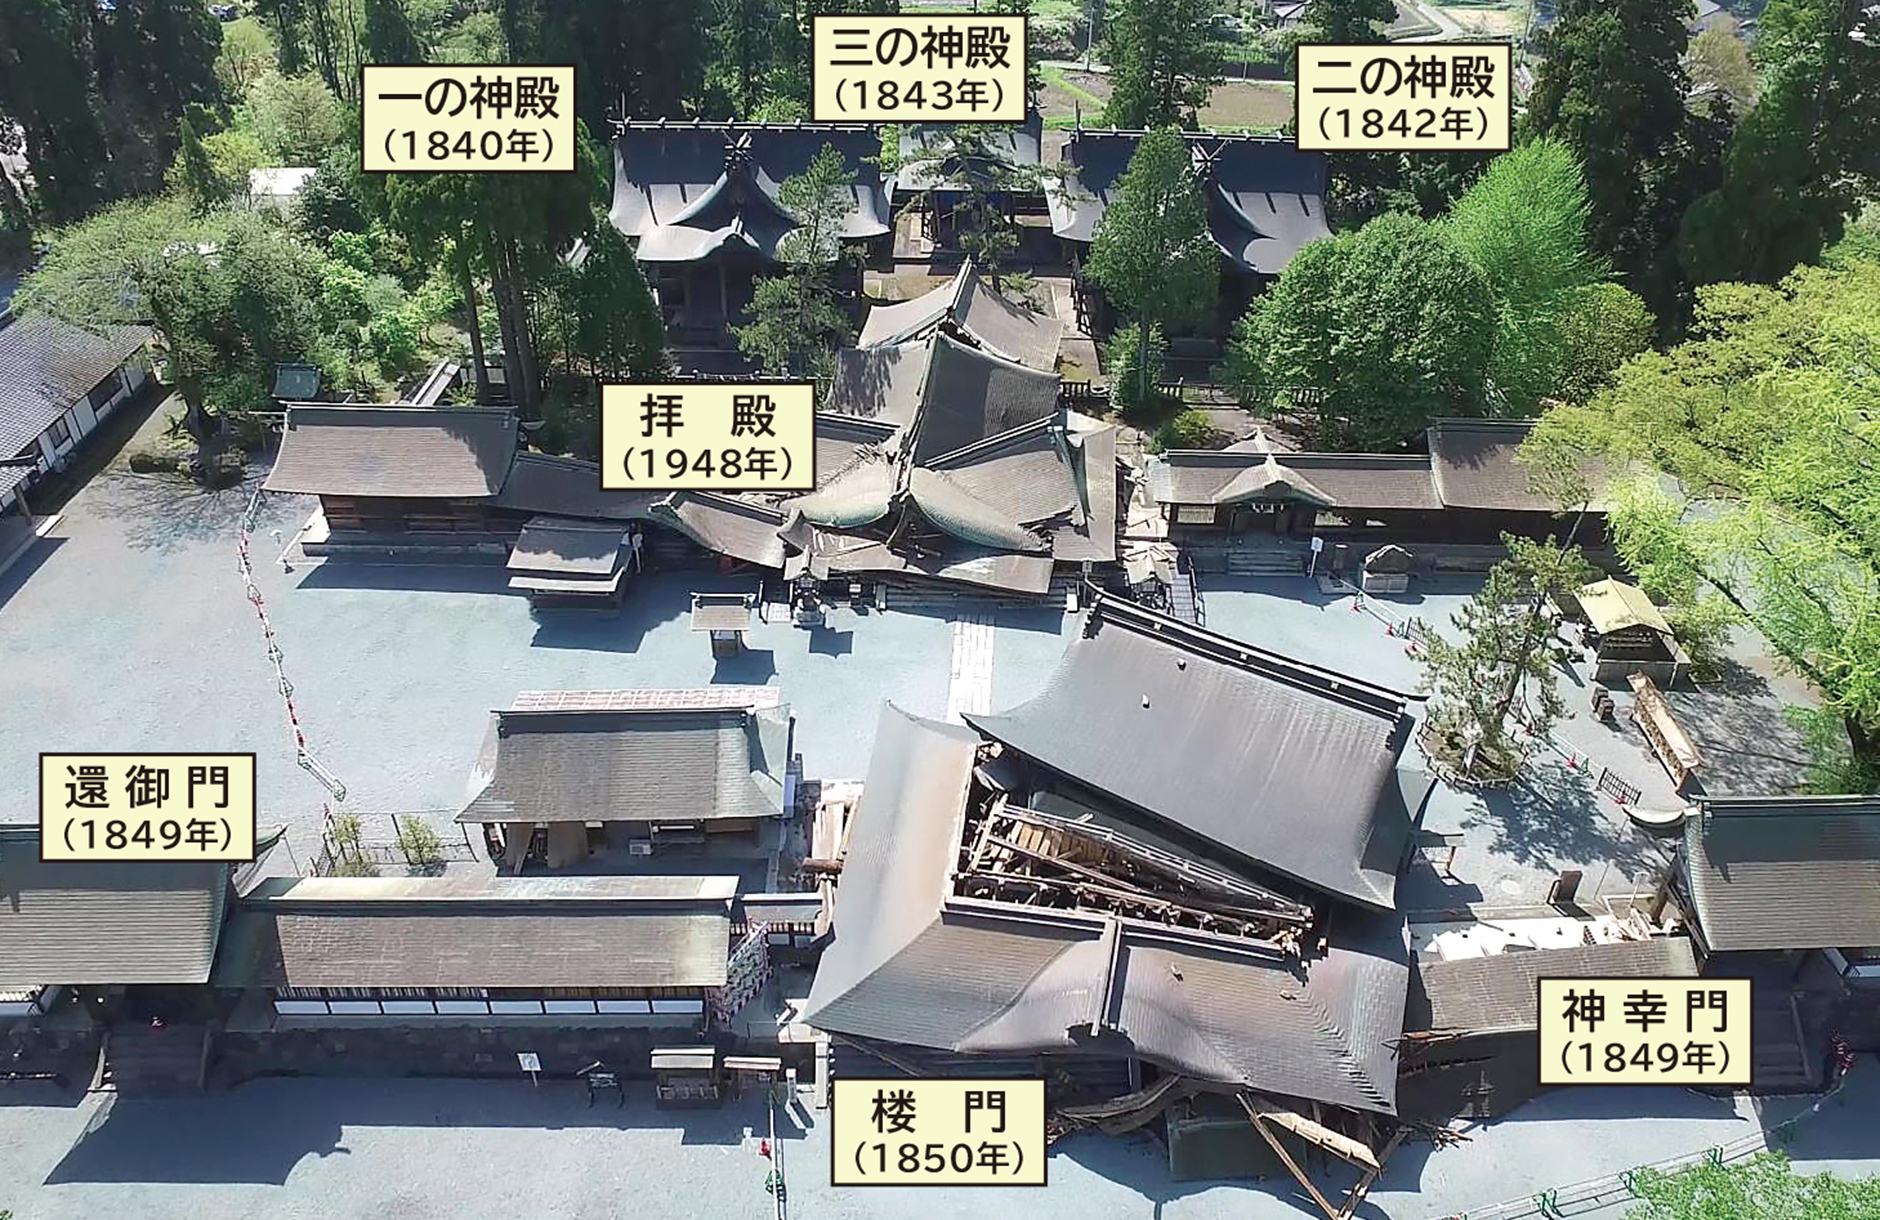 2016年4月の熊本地震で被災した阿蘇神社全景。()内は造営年